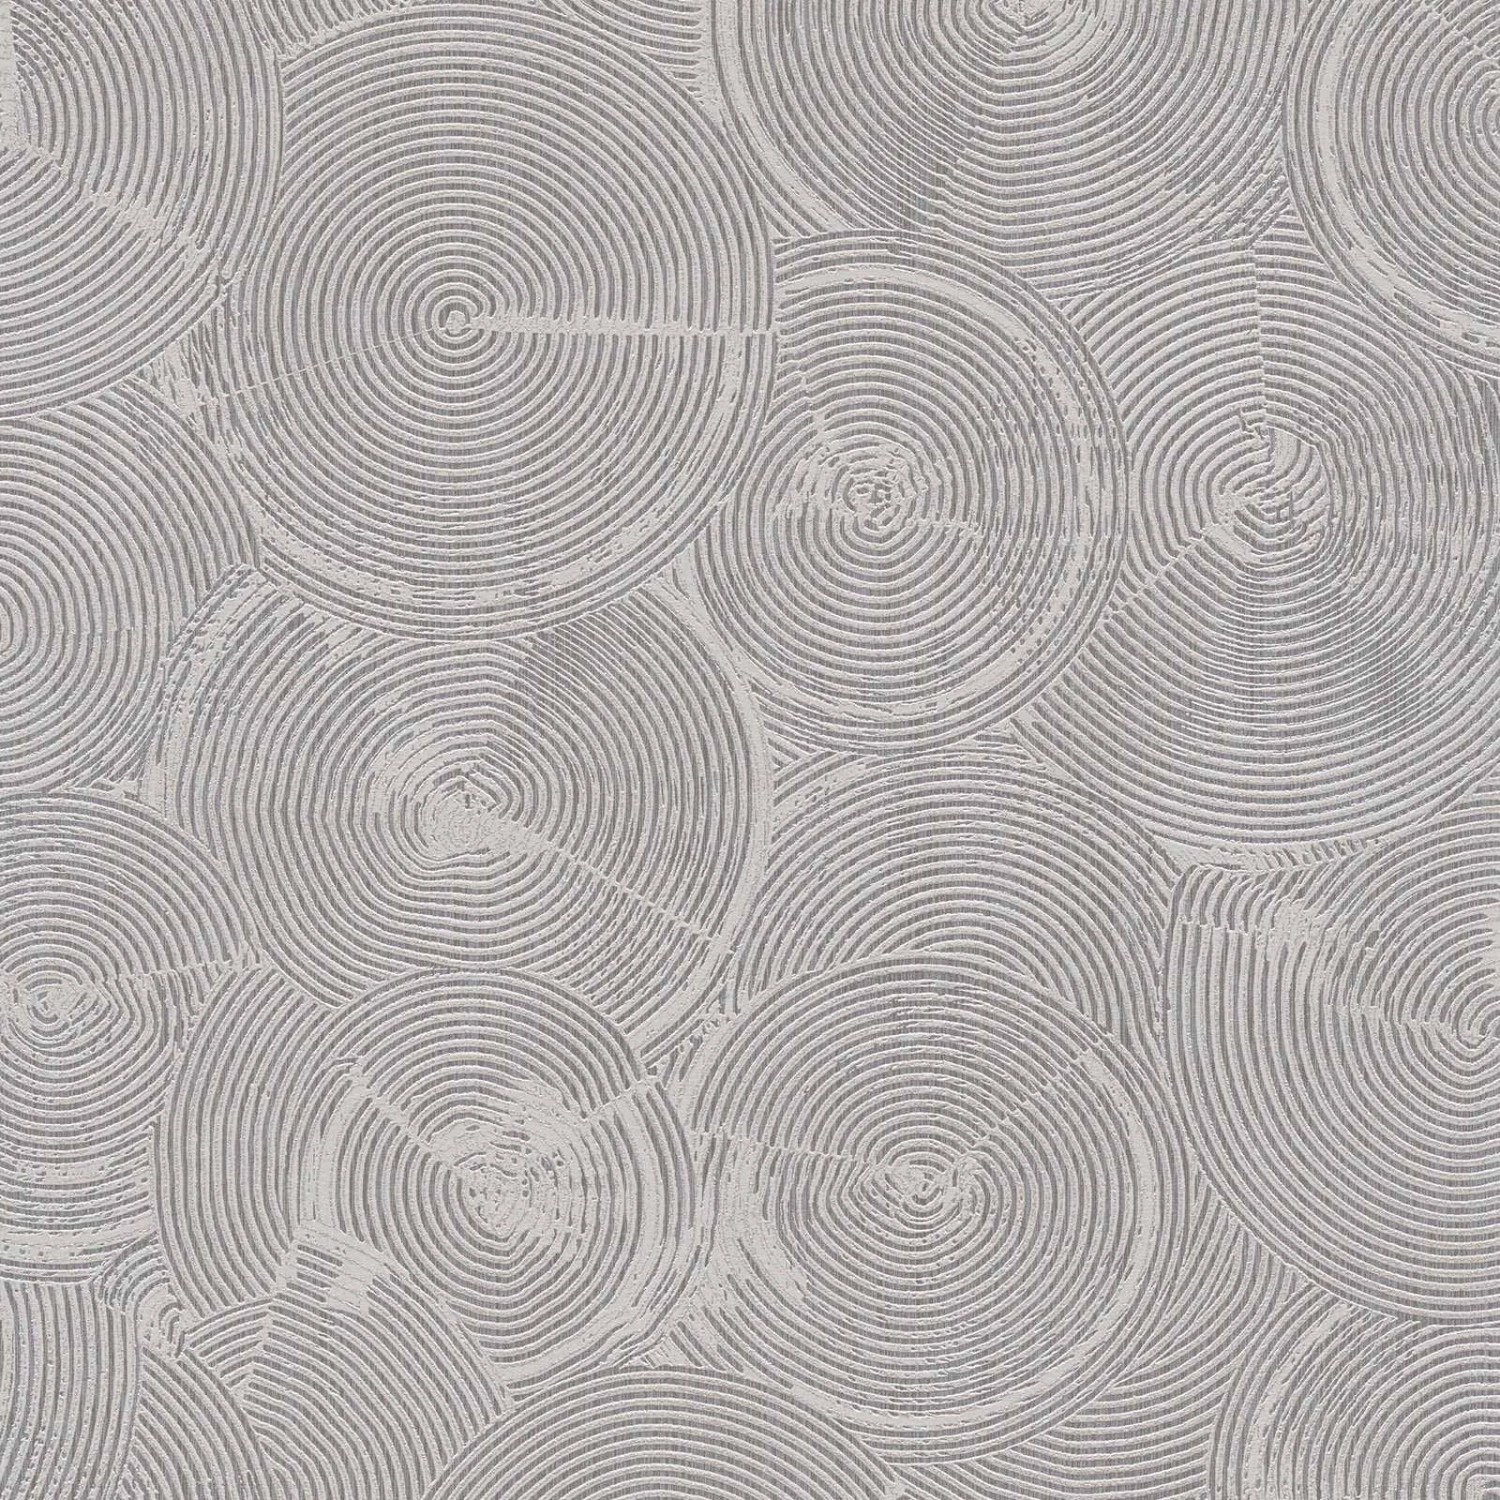 Bricoflor Teller Vliestapete Grau Afrikanische Tapete Hellgrau für Esszimmer und Küche Vlies Mustertapete mit Kreis Design im Ethno Chic von Bricoflor